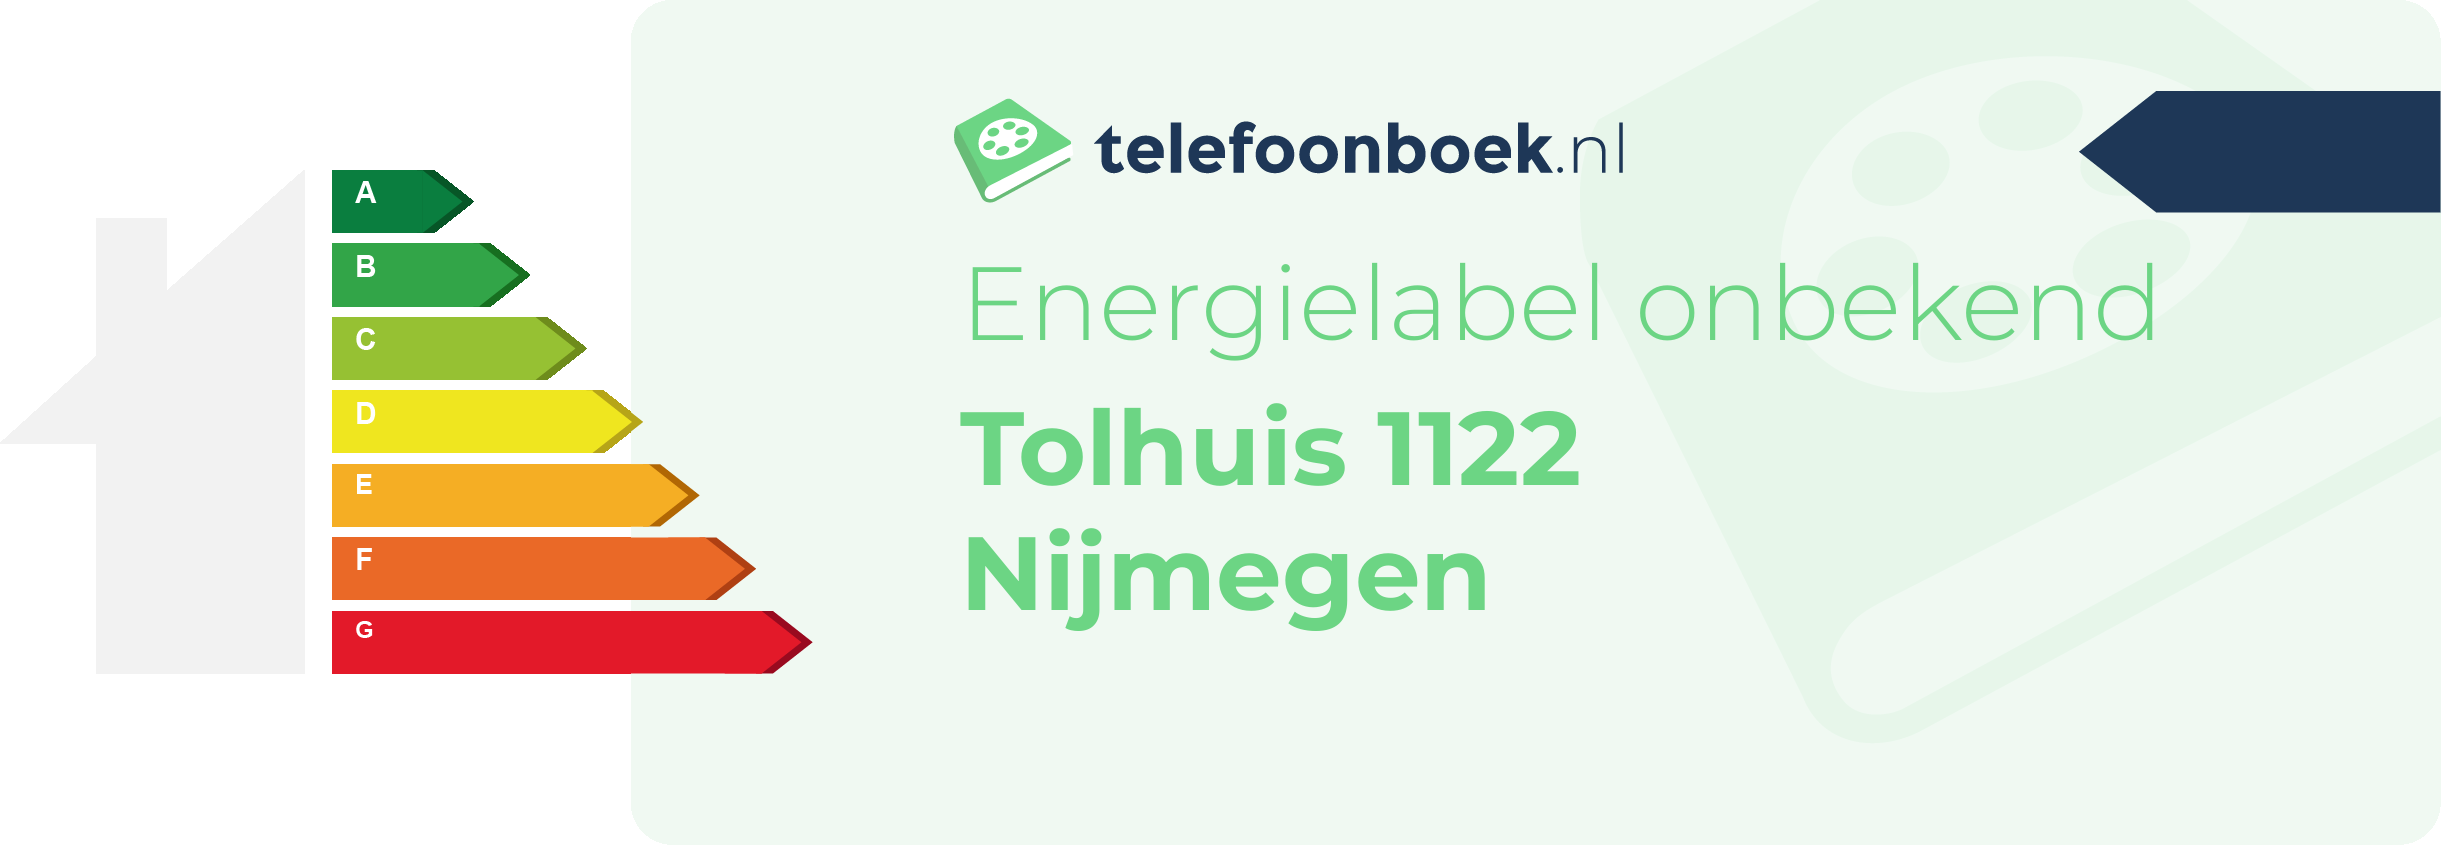 Energielabel Tolhuis 1122 Nijmegen